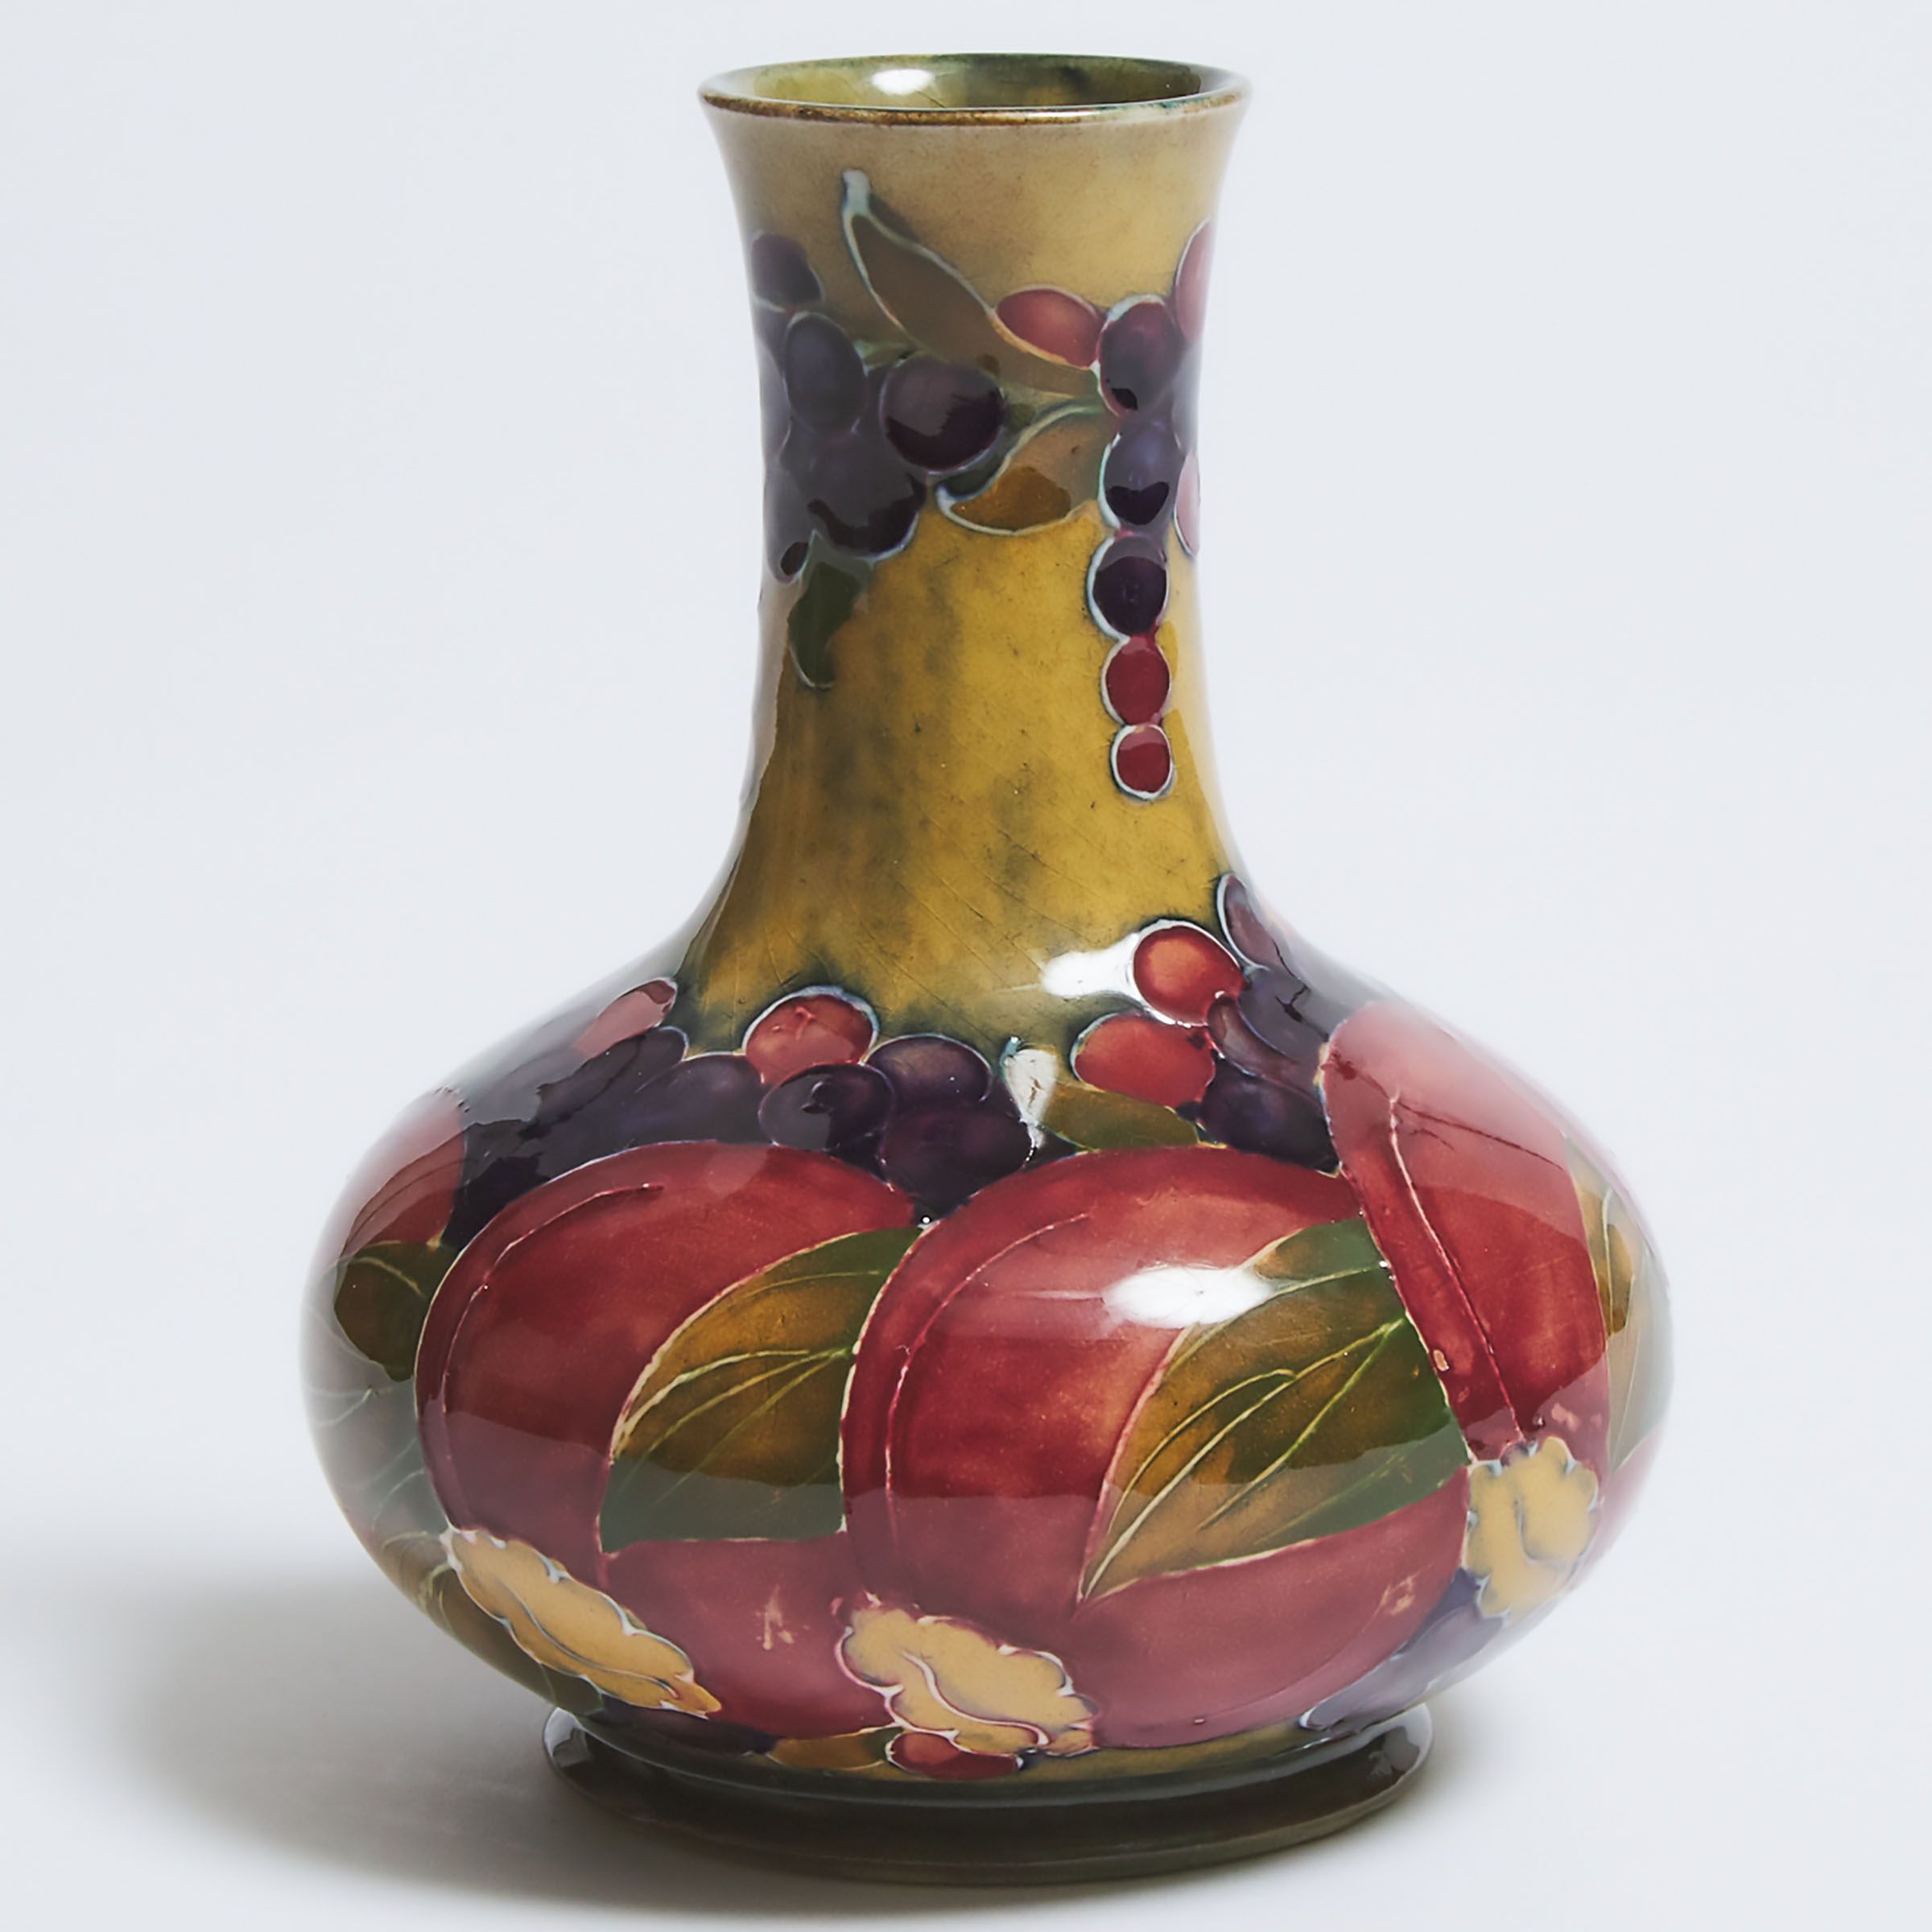 Moorcroft Pomegranate Vase, dated 1914